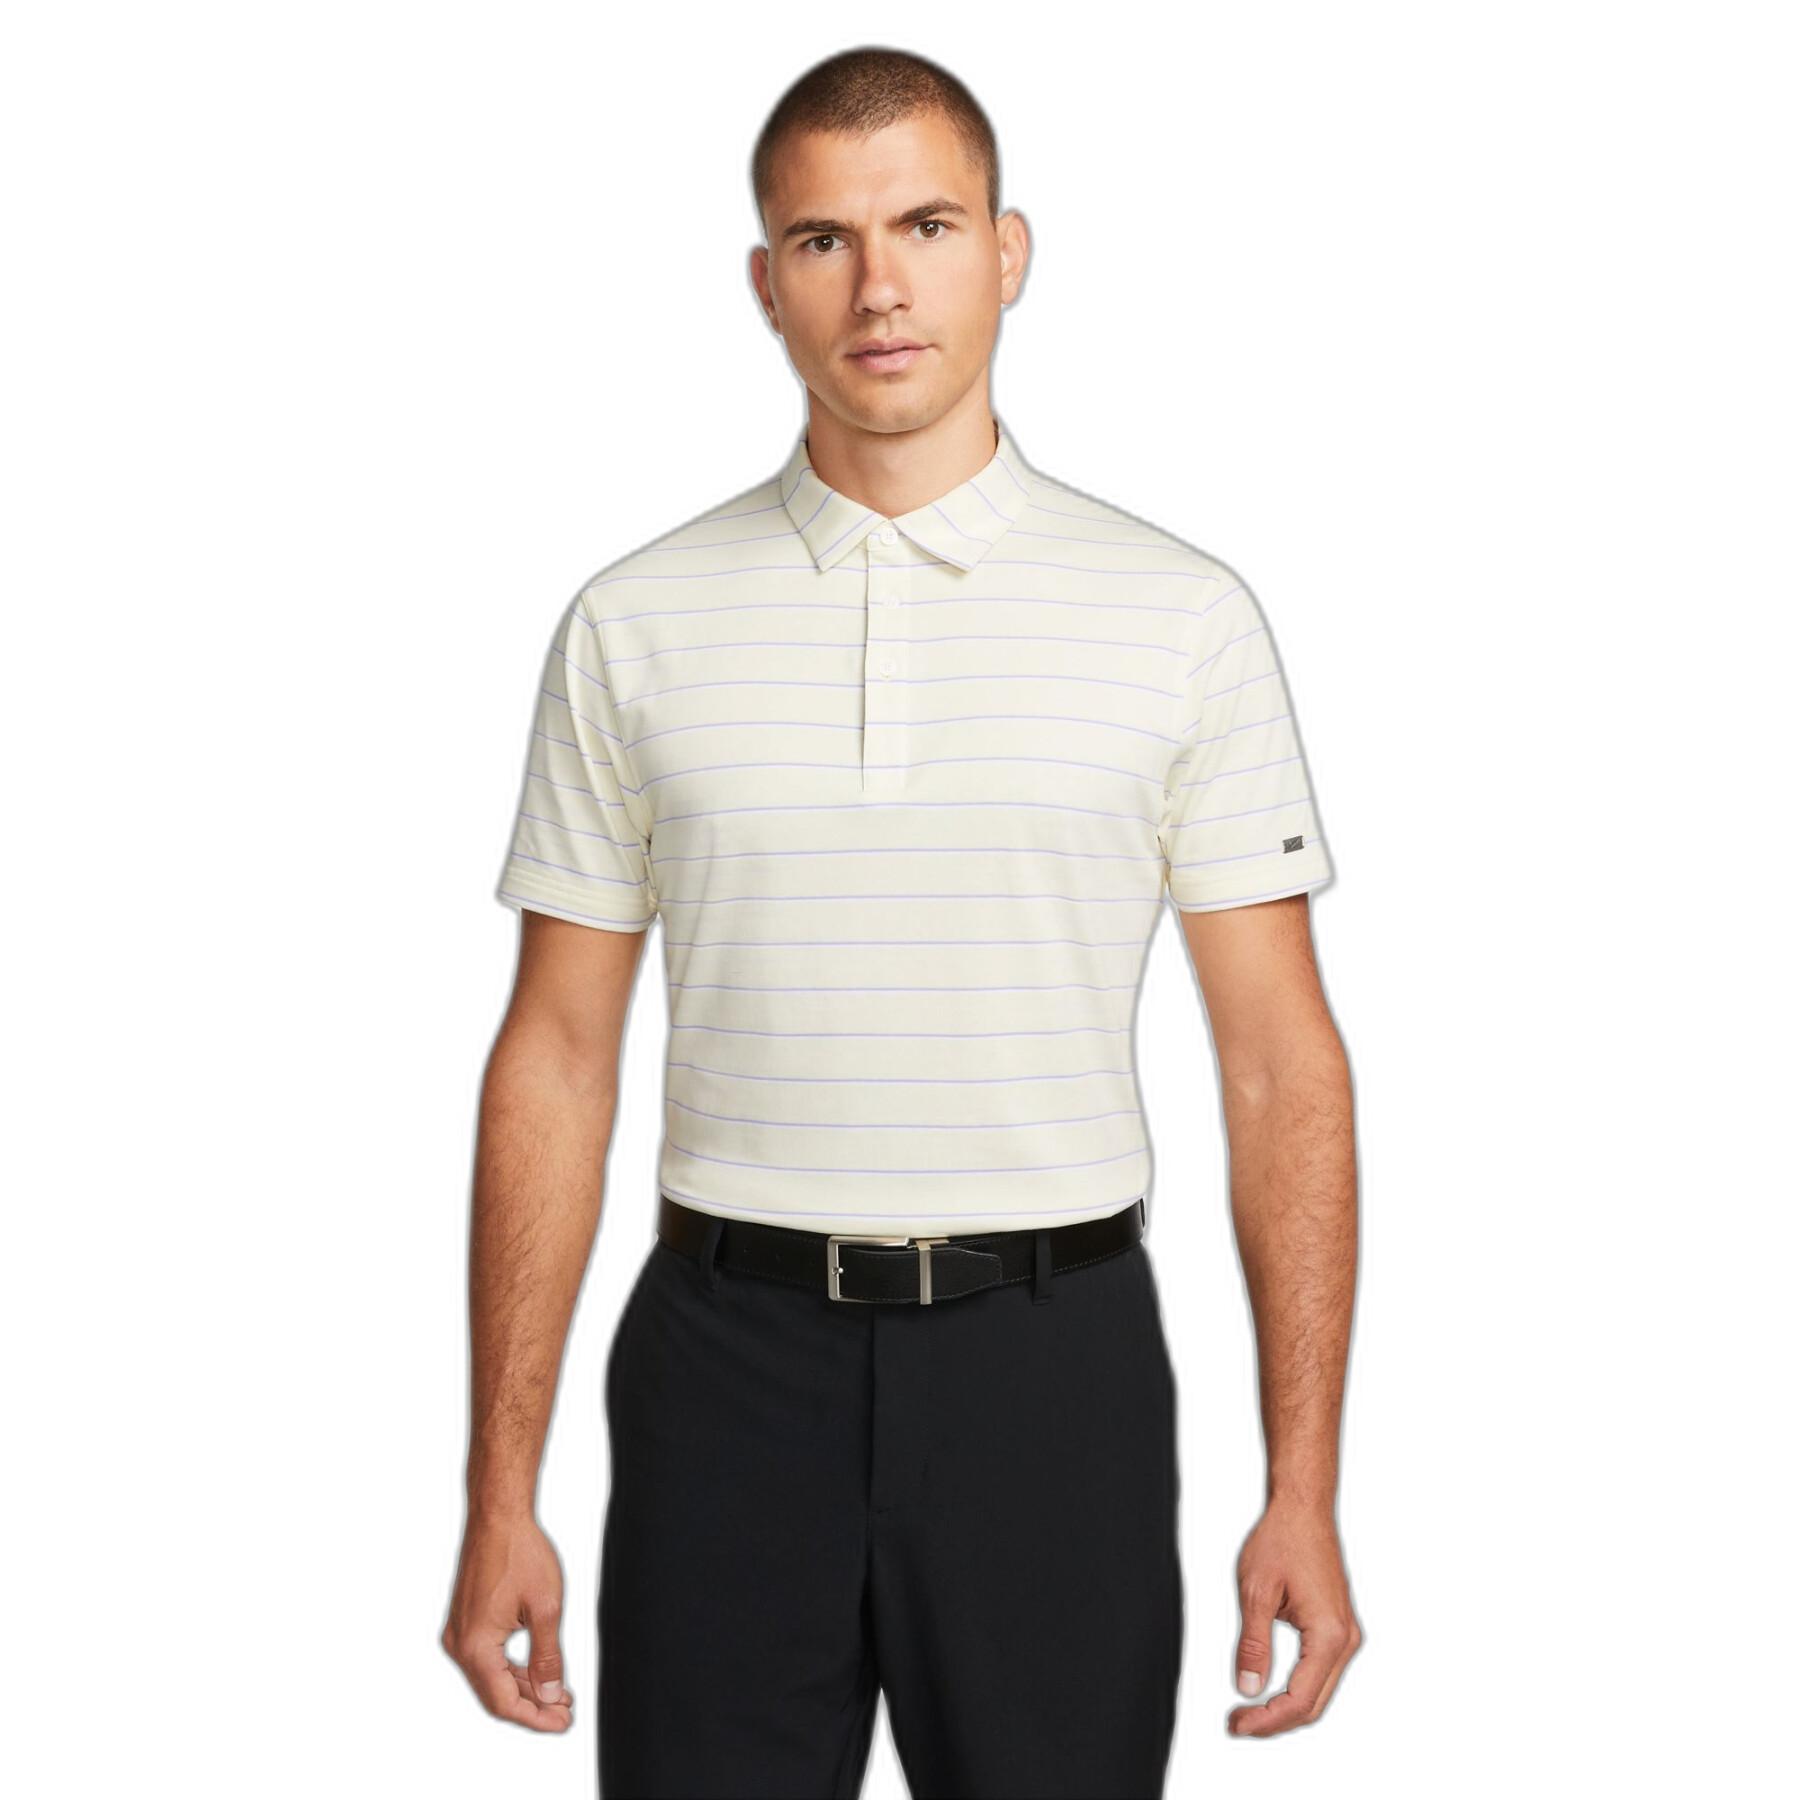 Striped polo shirt Nike Dri-Fit Player